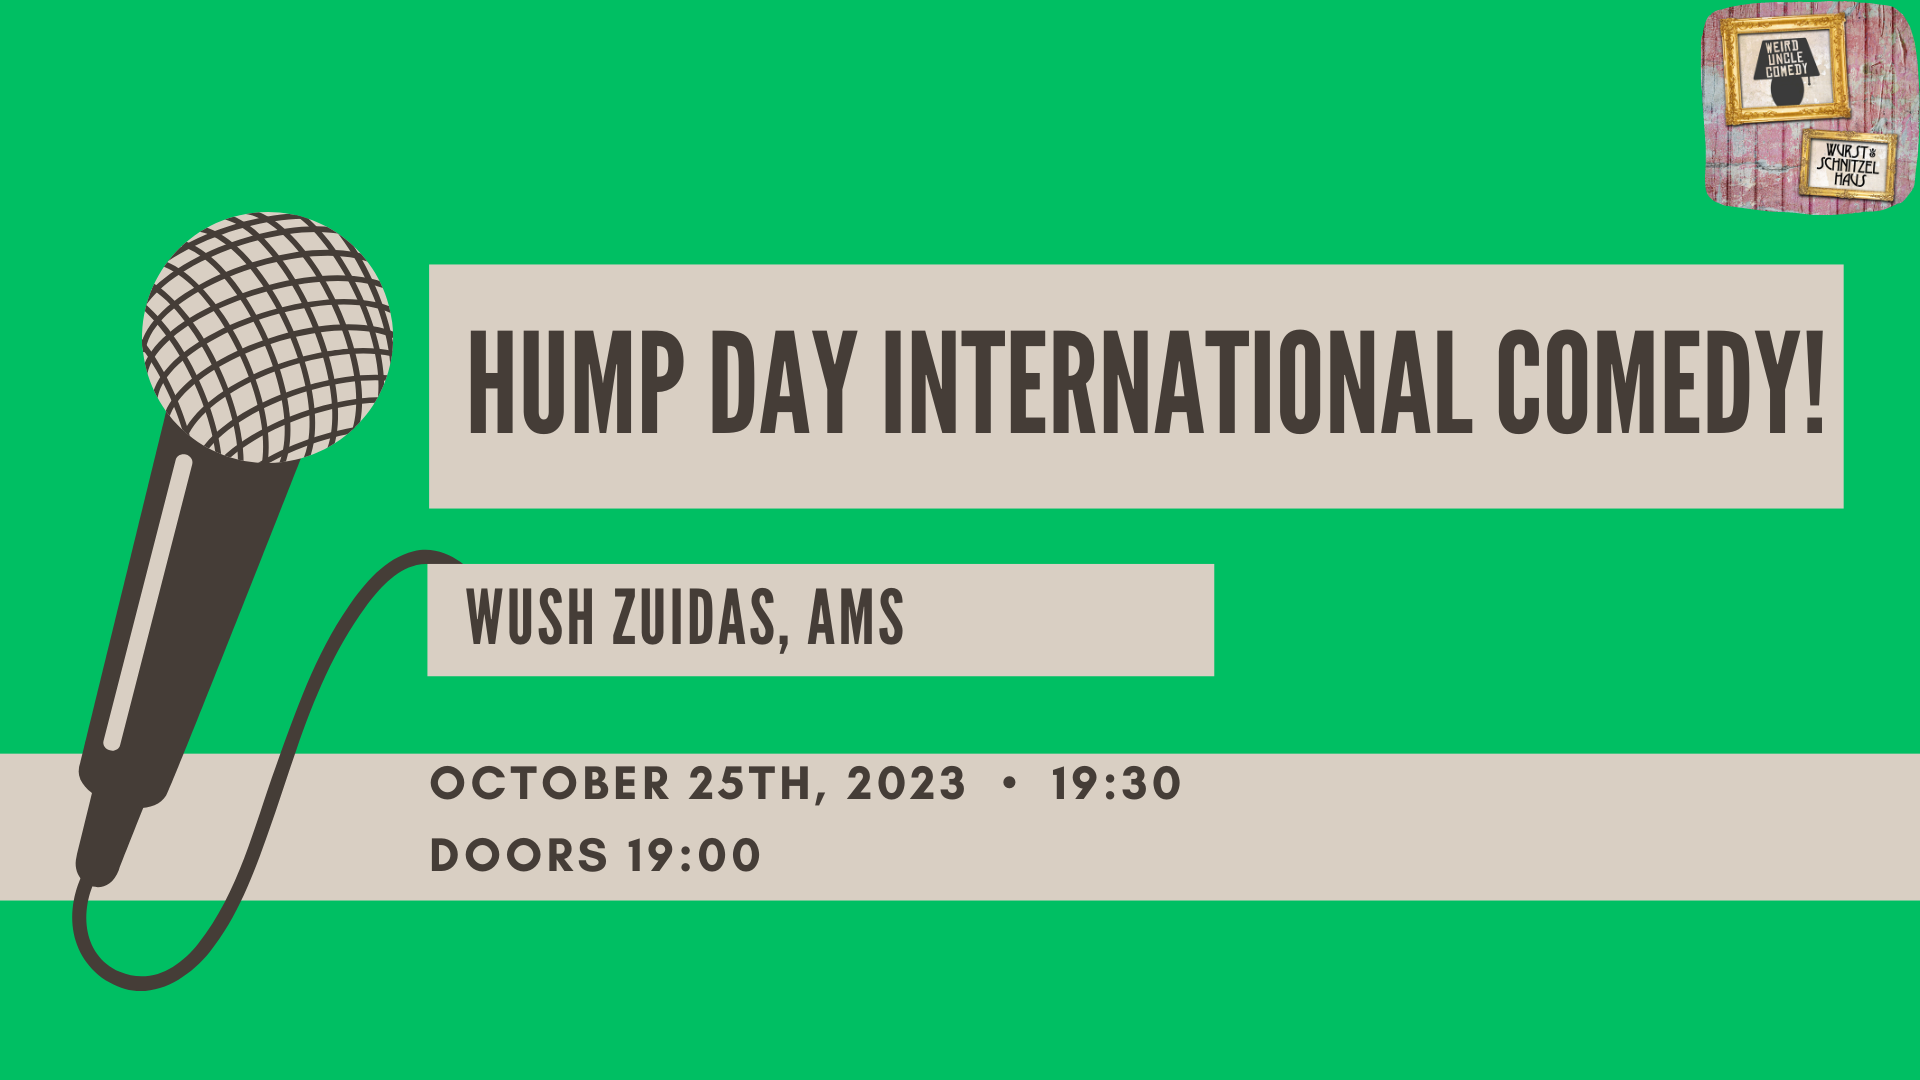 Ticket kopen voor evenement Hump Day Comedy! 